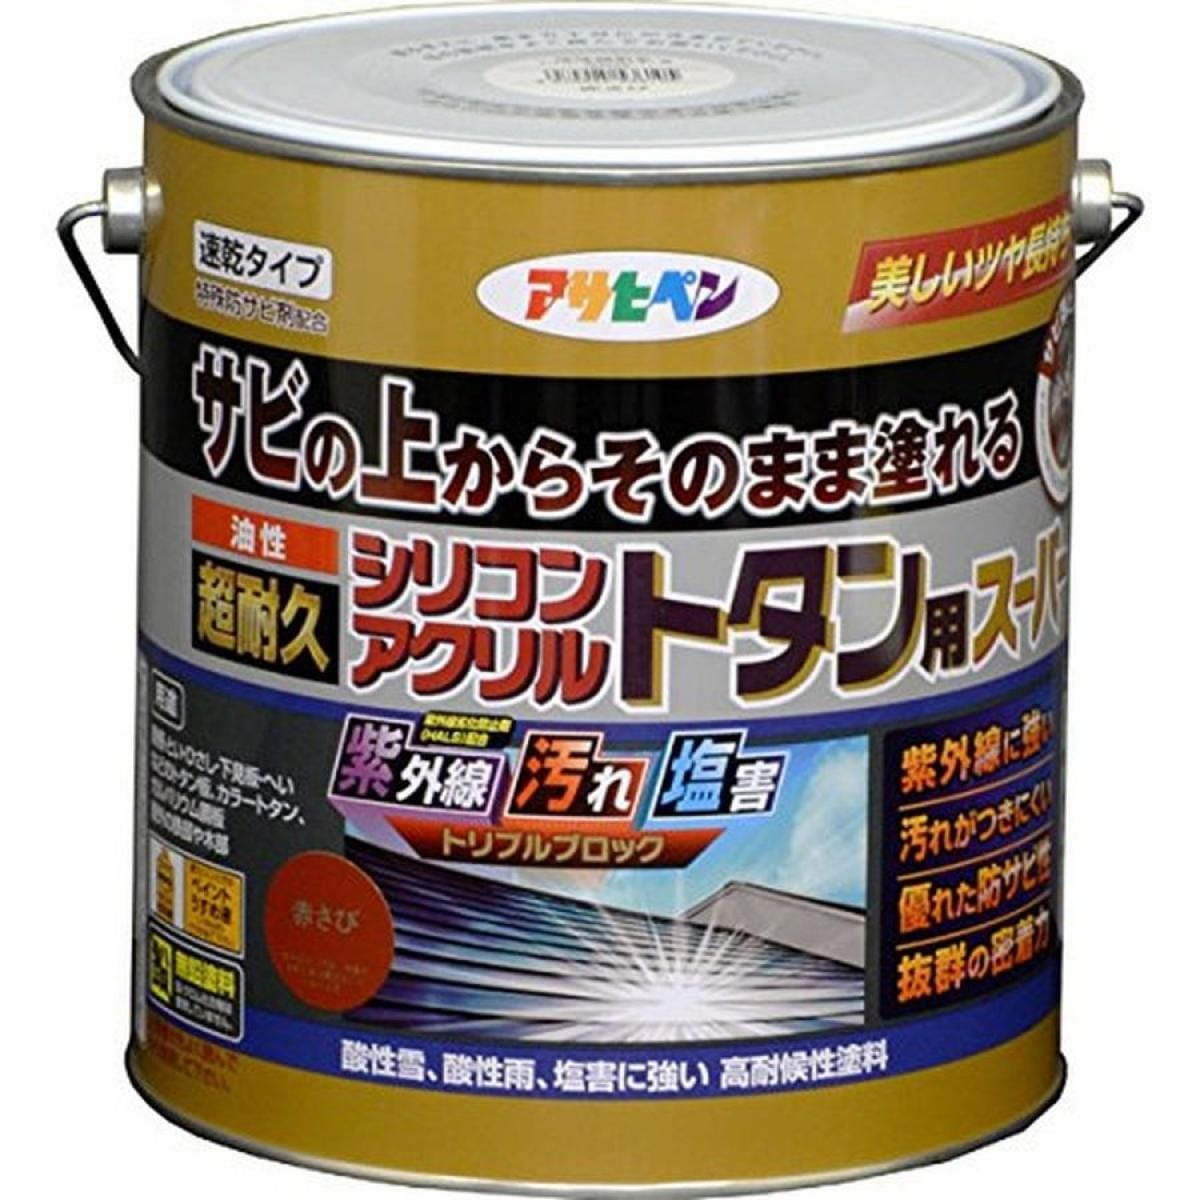 アサヒペンアサヒペン 油性超耐久シリコンアクリルトタン用スーパー 3kg (赤さび)